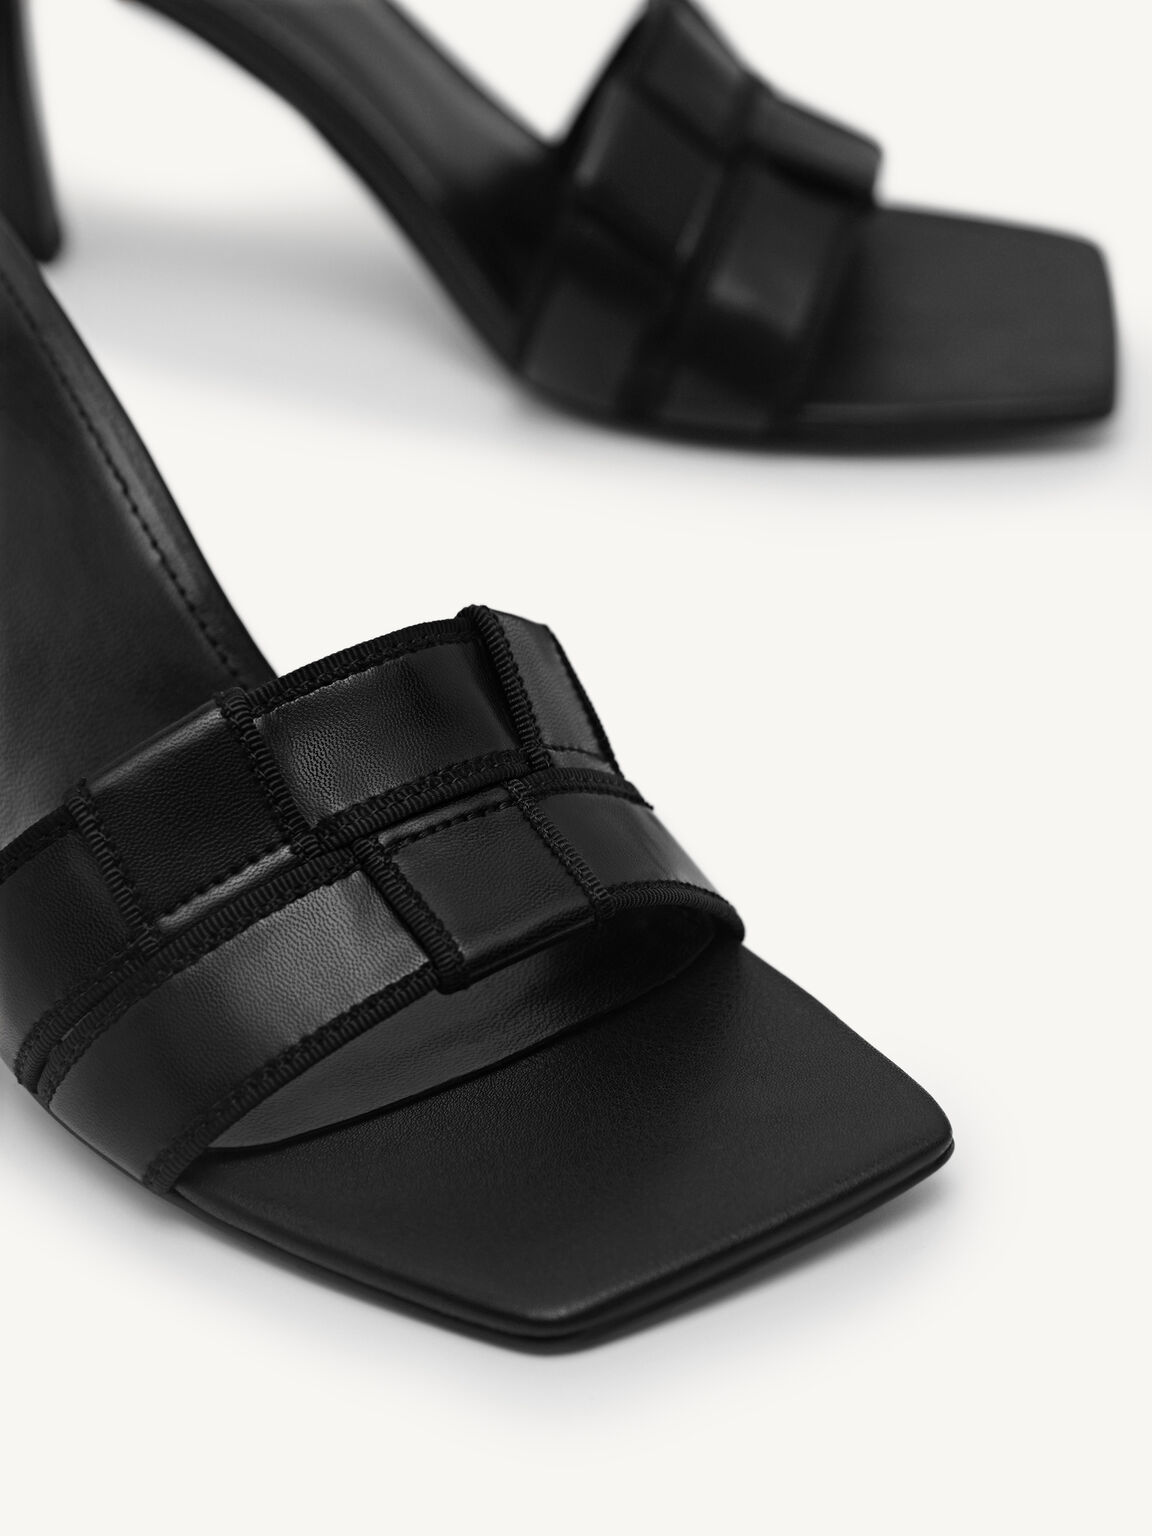 Woven Heel Sandals, Black